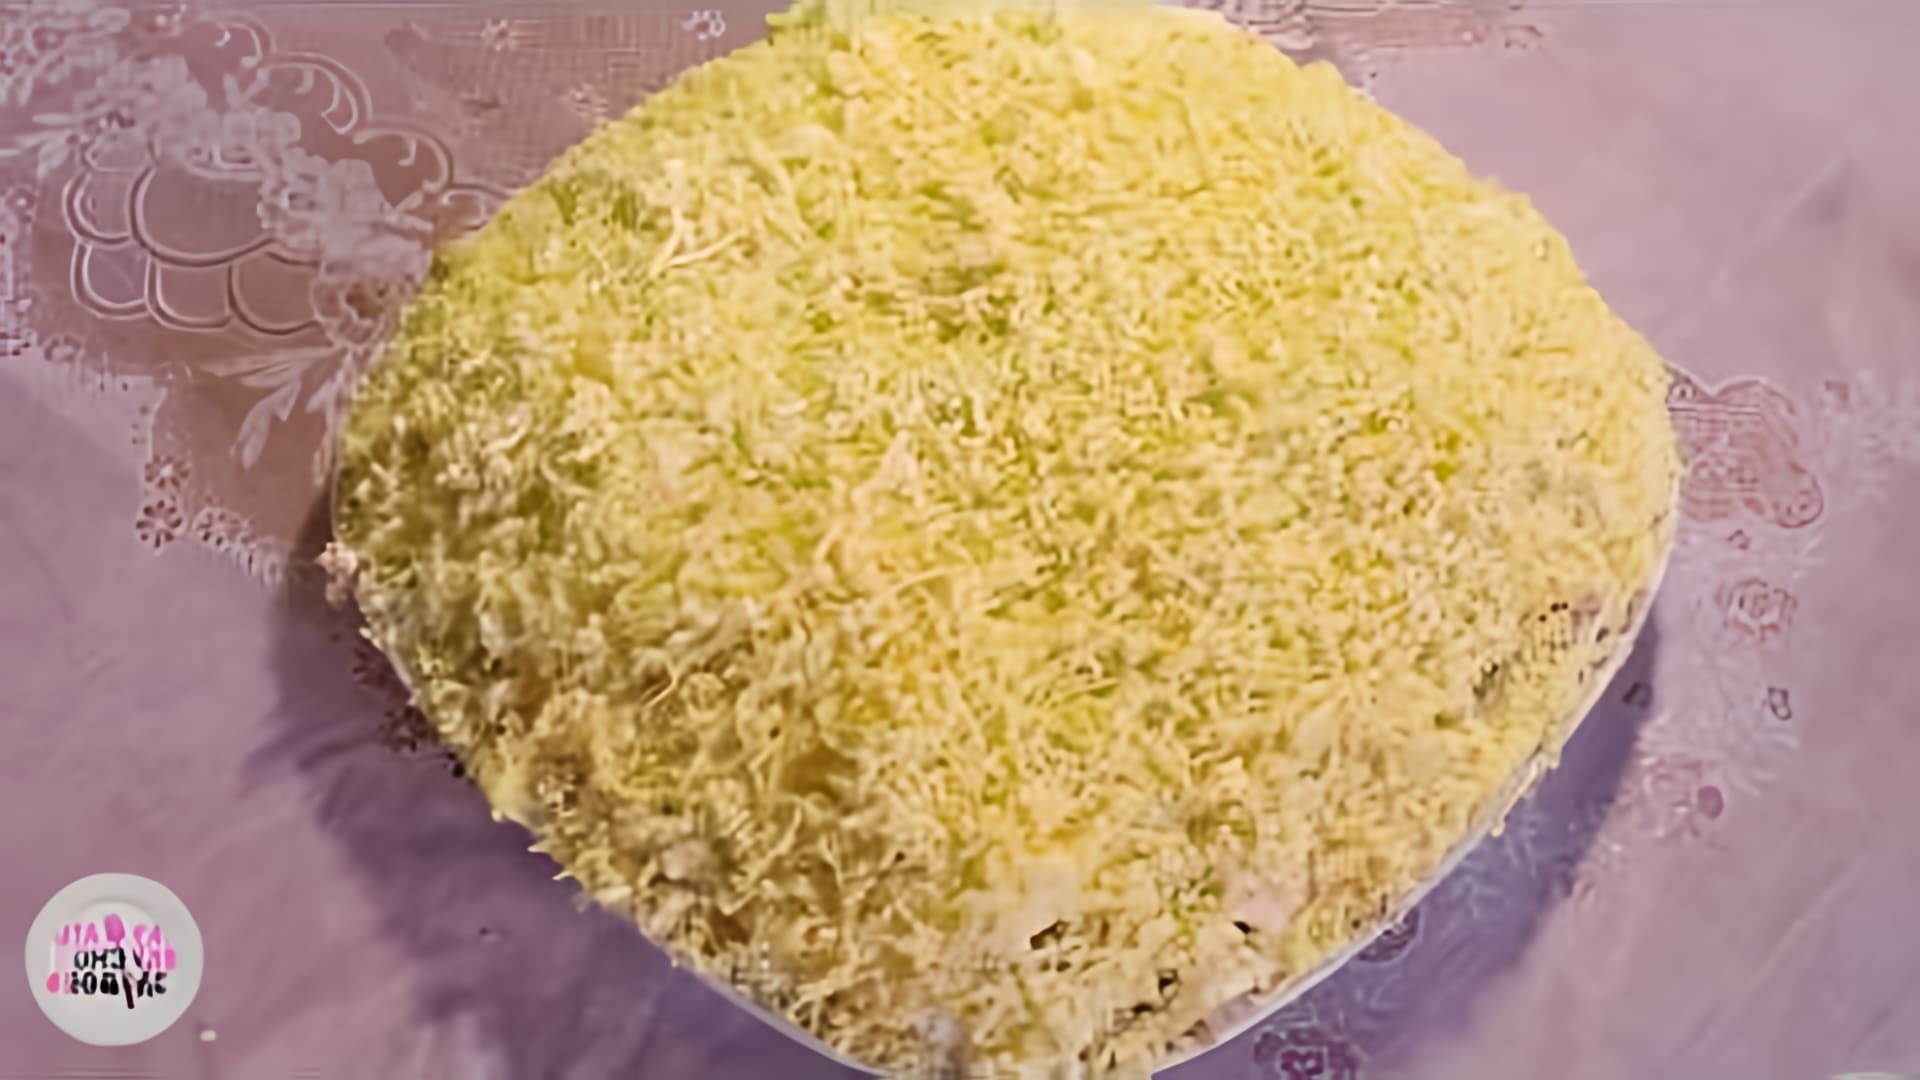 В этом видео демонстрируется рецепт приготовления салата "Мимоза" с использованием консервированной горбуши, сыра, яиц, лука и сливочного масла